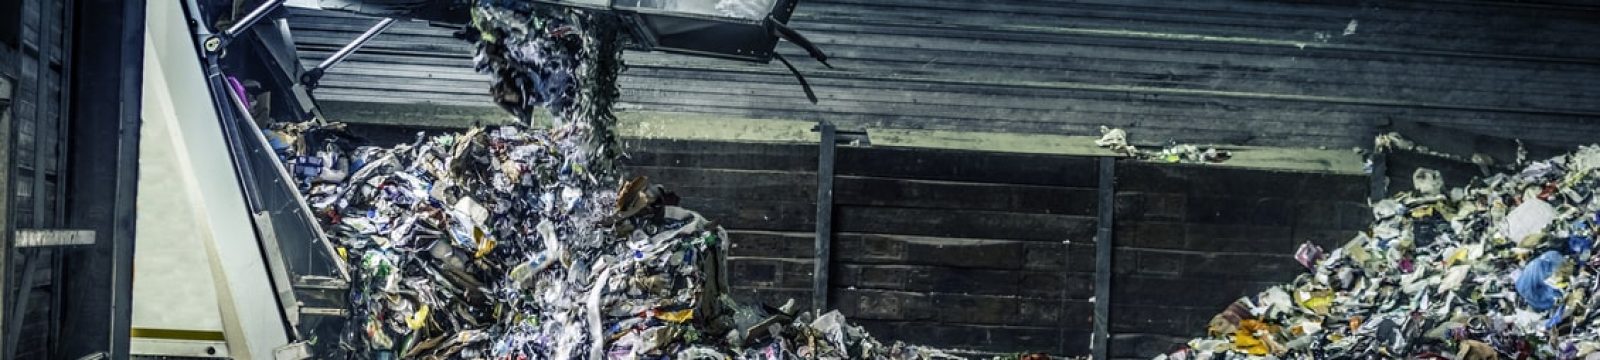 Hoe kan uw bedrijf effectief en duurzaam omgaan met afval?